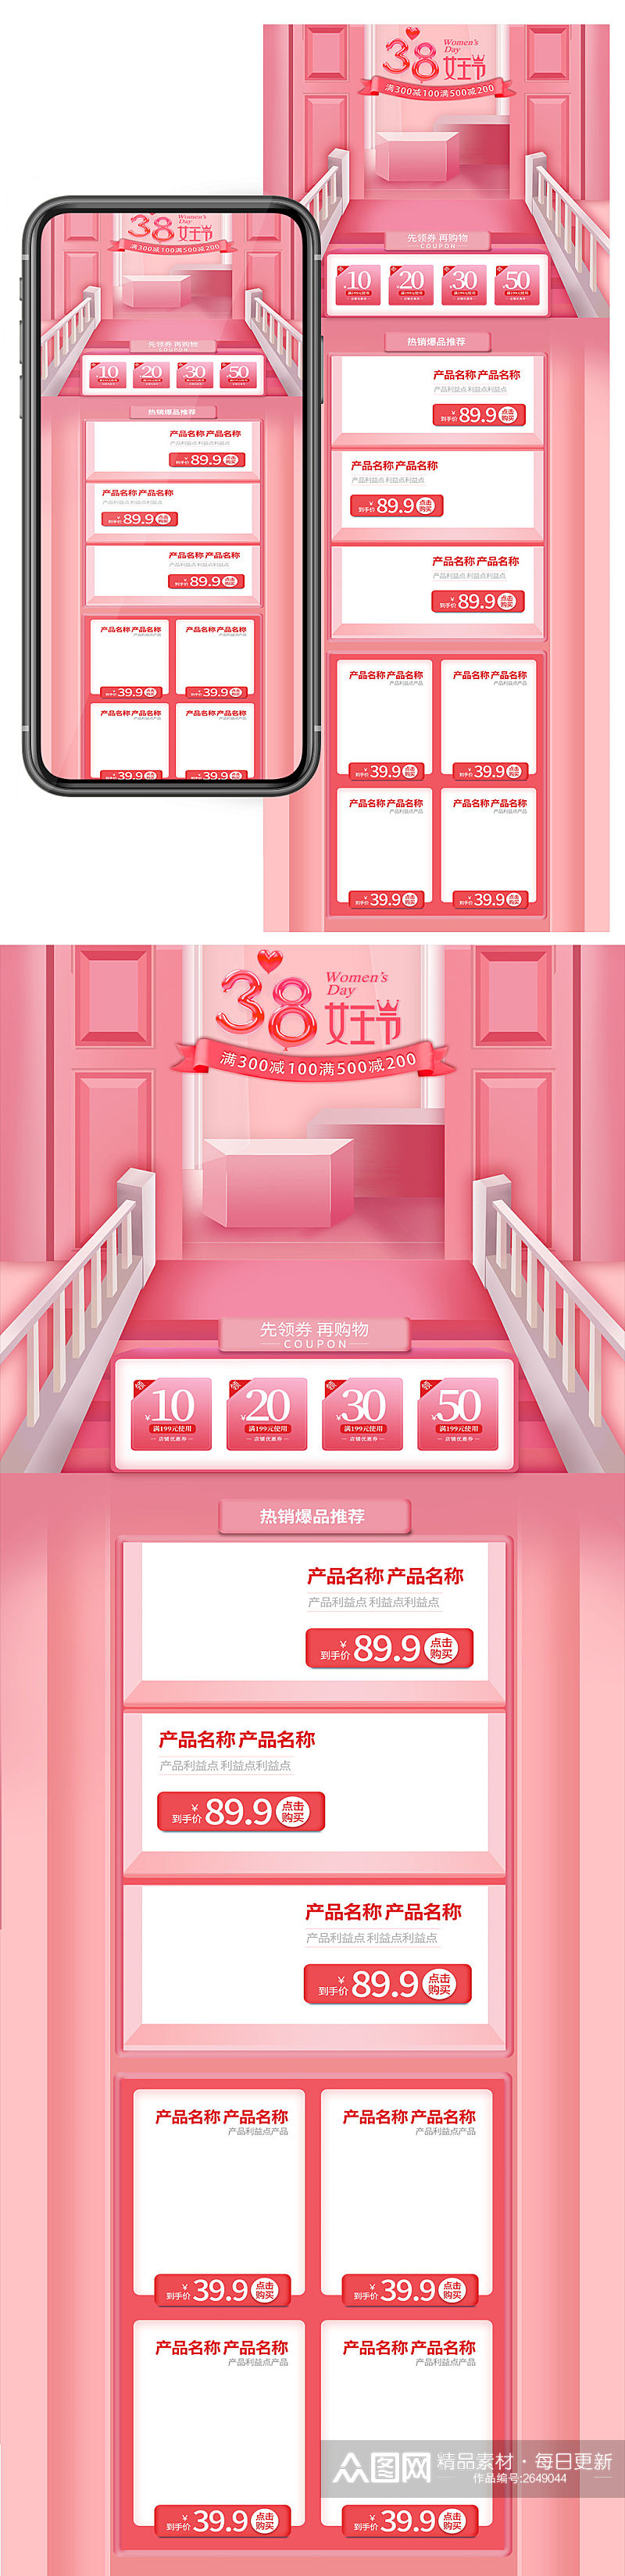 6粉色唯美女生节女神节狂欢淘宝首页设计素材